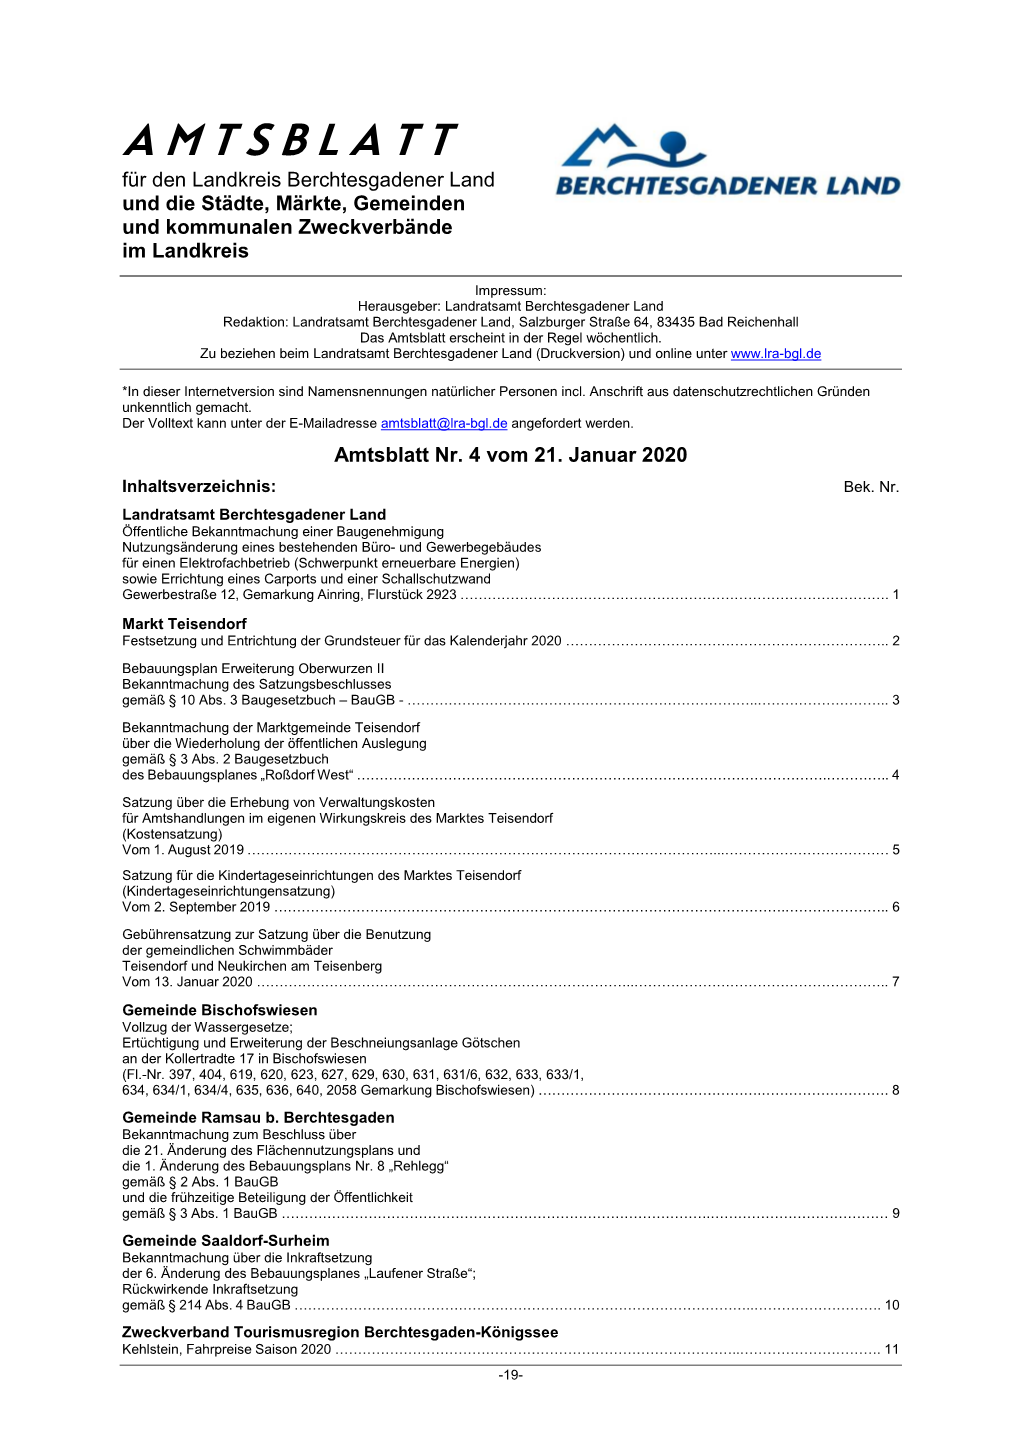 Amtsblatt Nr 04 Vom 21-01-2020 Datenschutz